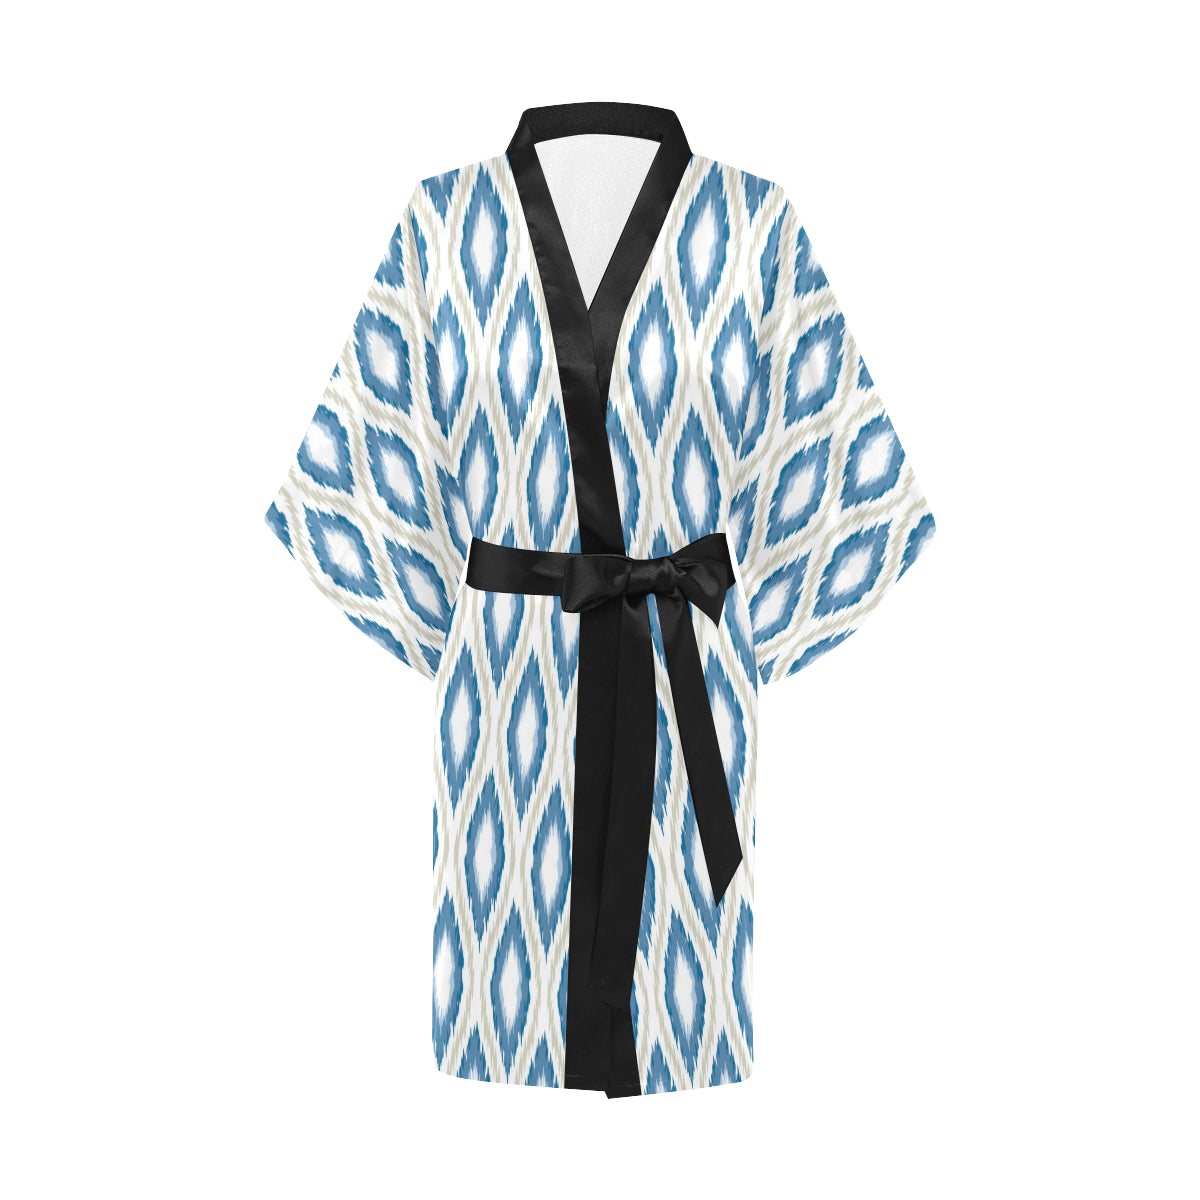 Ikat Pattern Print Design 02 Women's Short Kimono